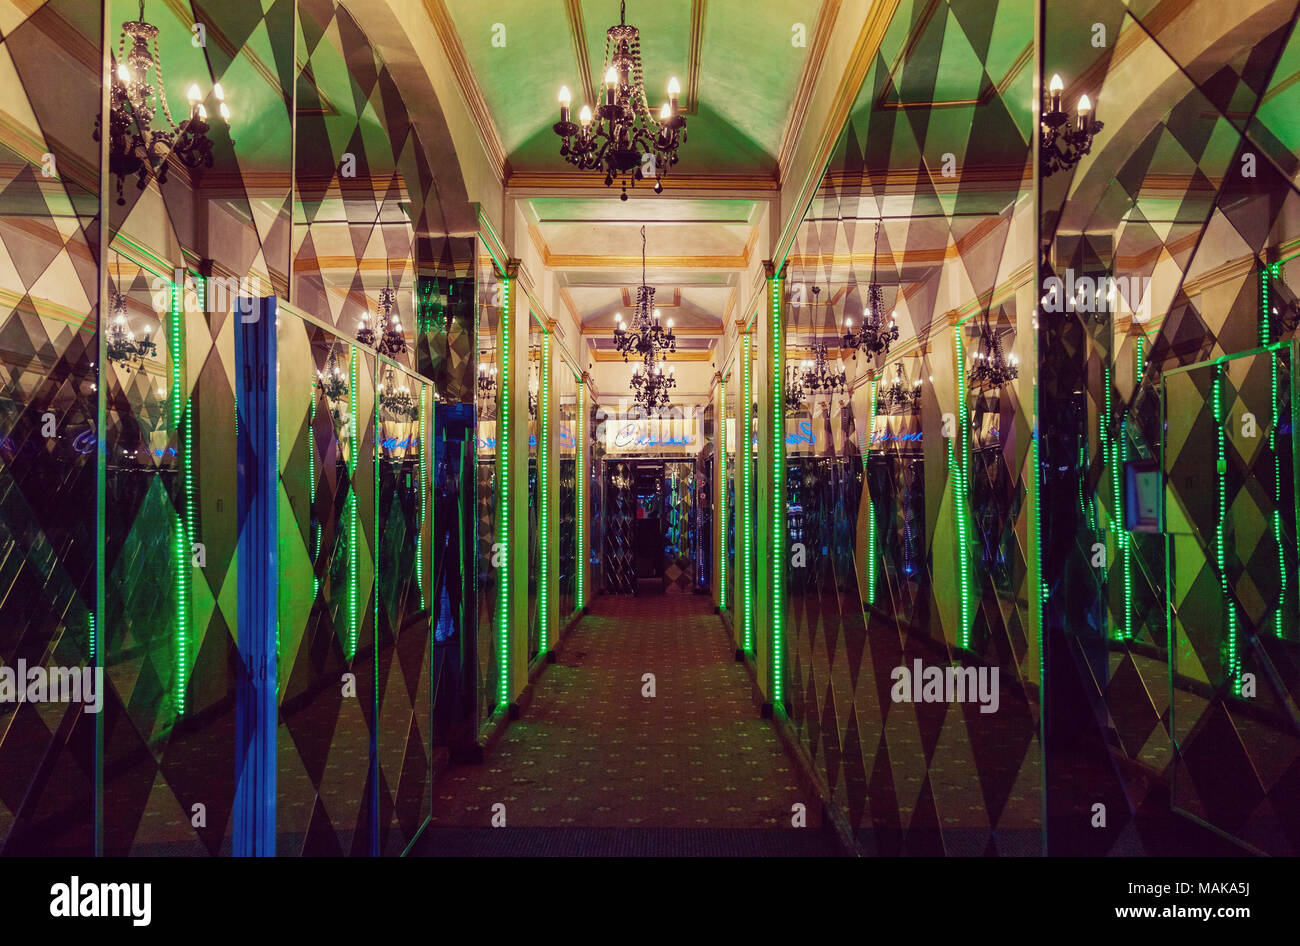 Shiny lusso ingresso casinò interno con specchi, luci al neon e riflessioni Foto Stock